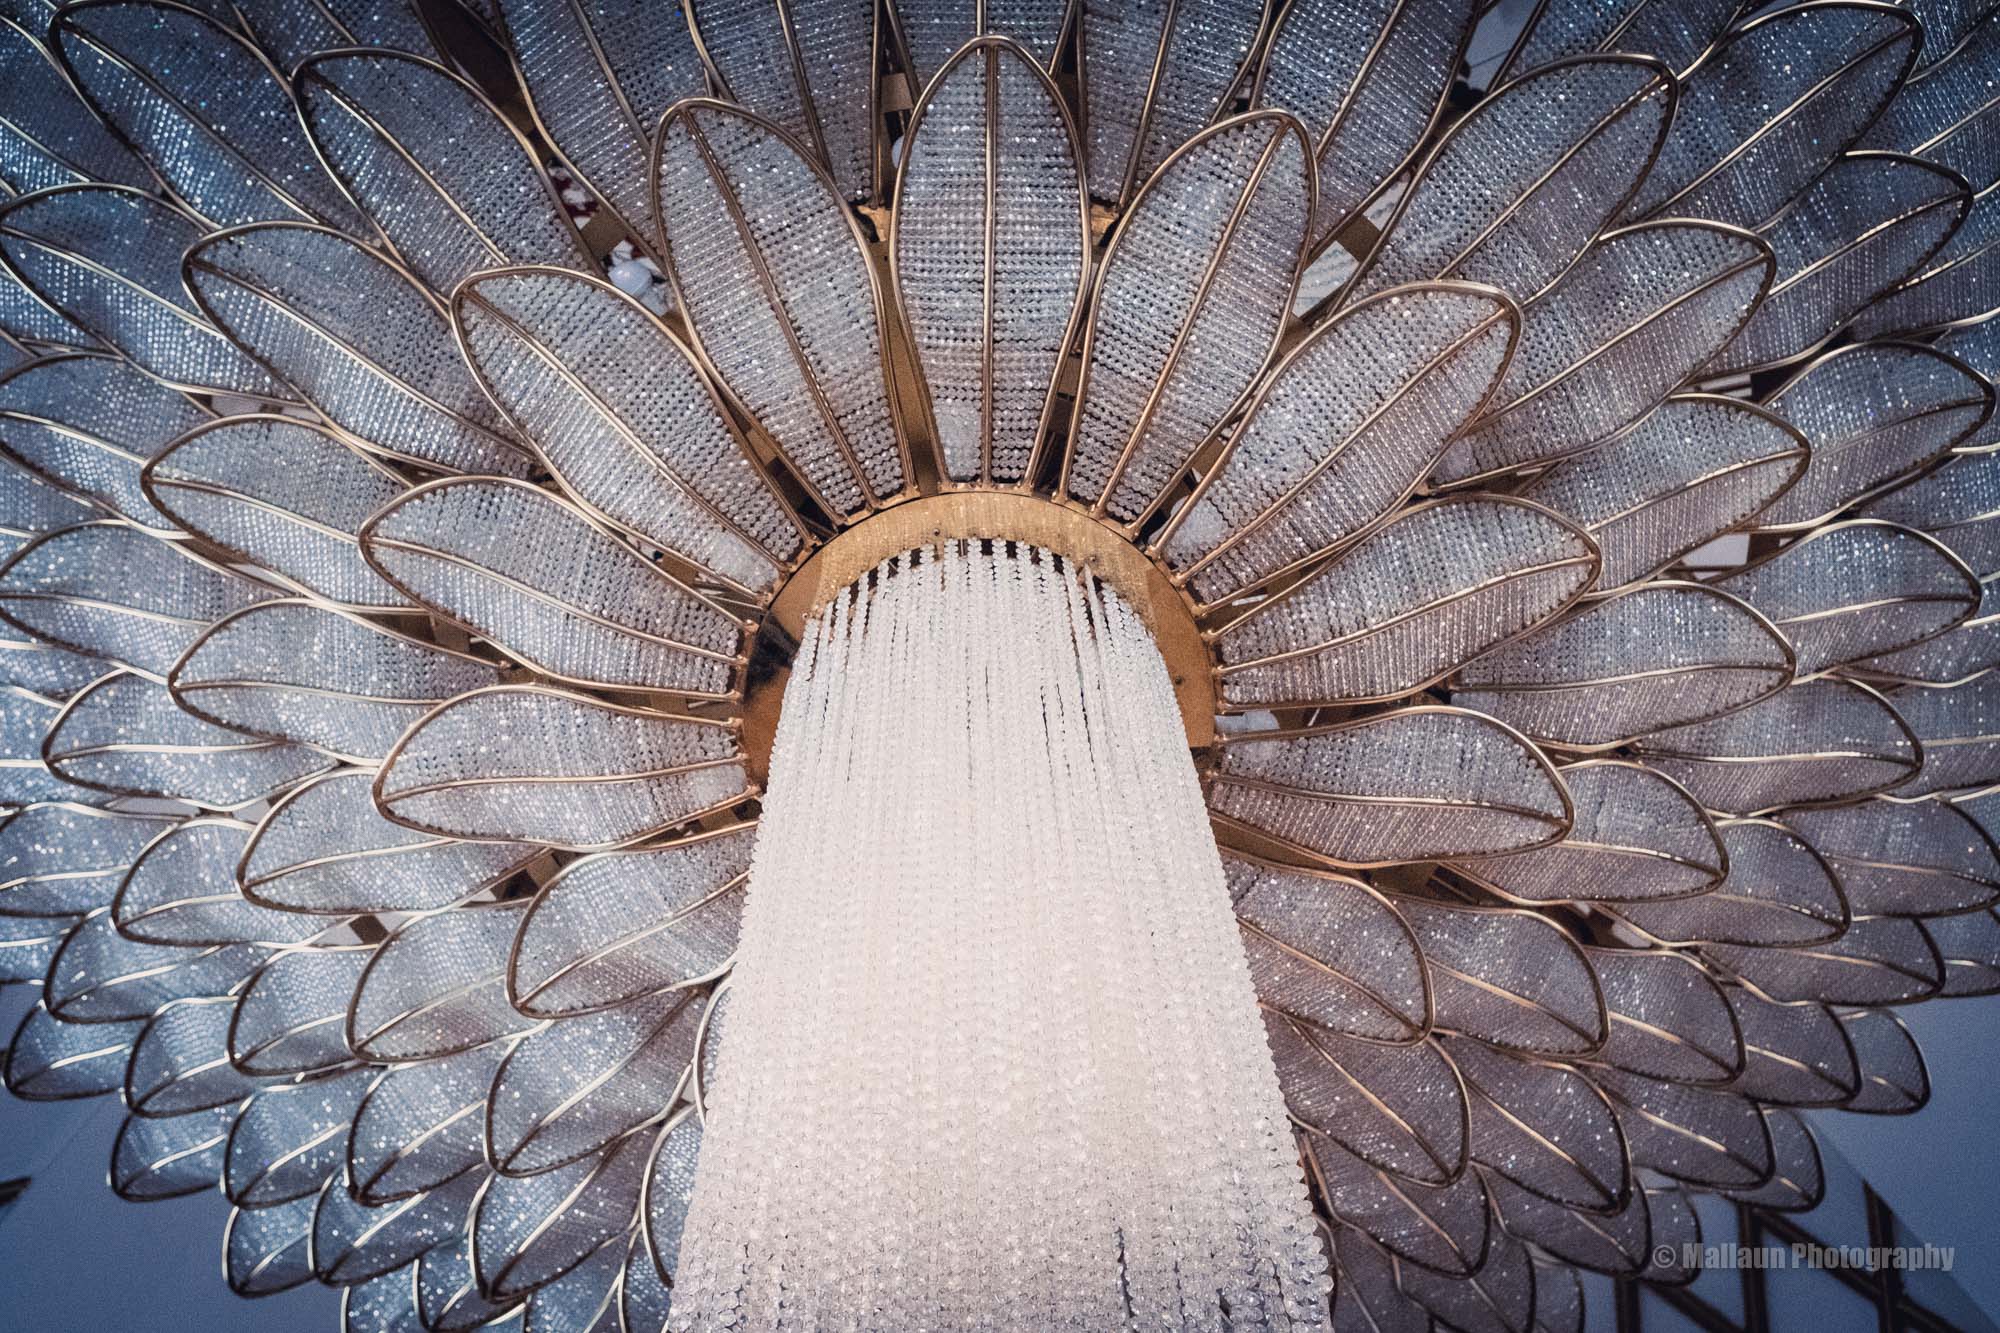 Kleine Lampenstudie in der Hotel-Lobby © Mallaun Photography